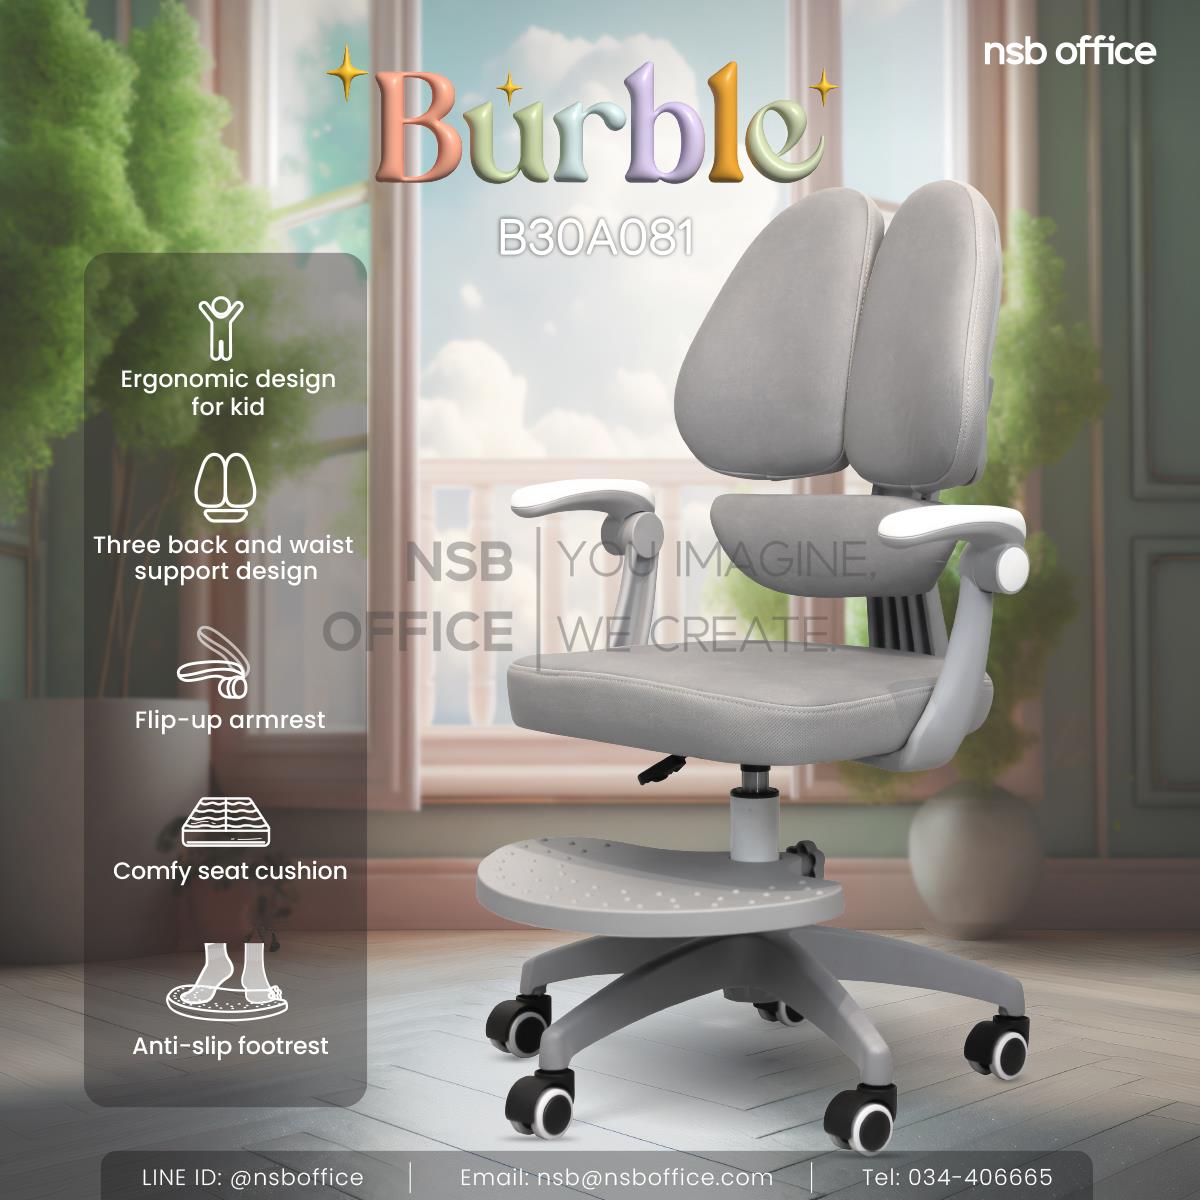 เก้าอี้เพื่อสุขภาพเด็ก รุ่น Burble (เบอร์เบิลล์) มีที่รองเท้า ขนาด62W*67D*89H